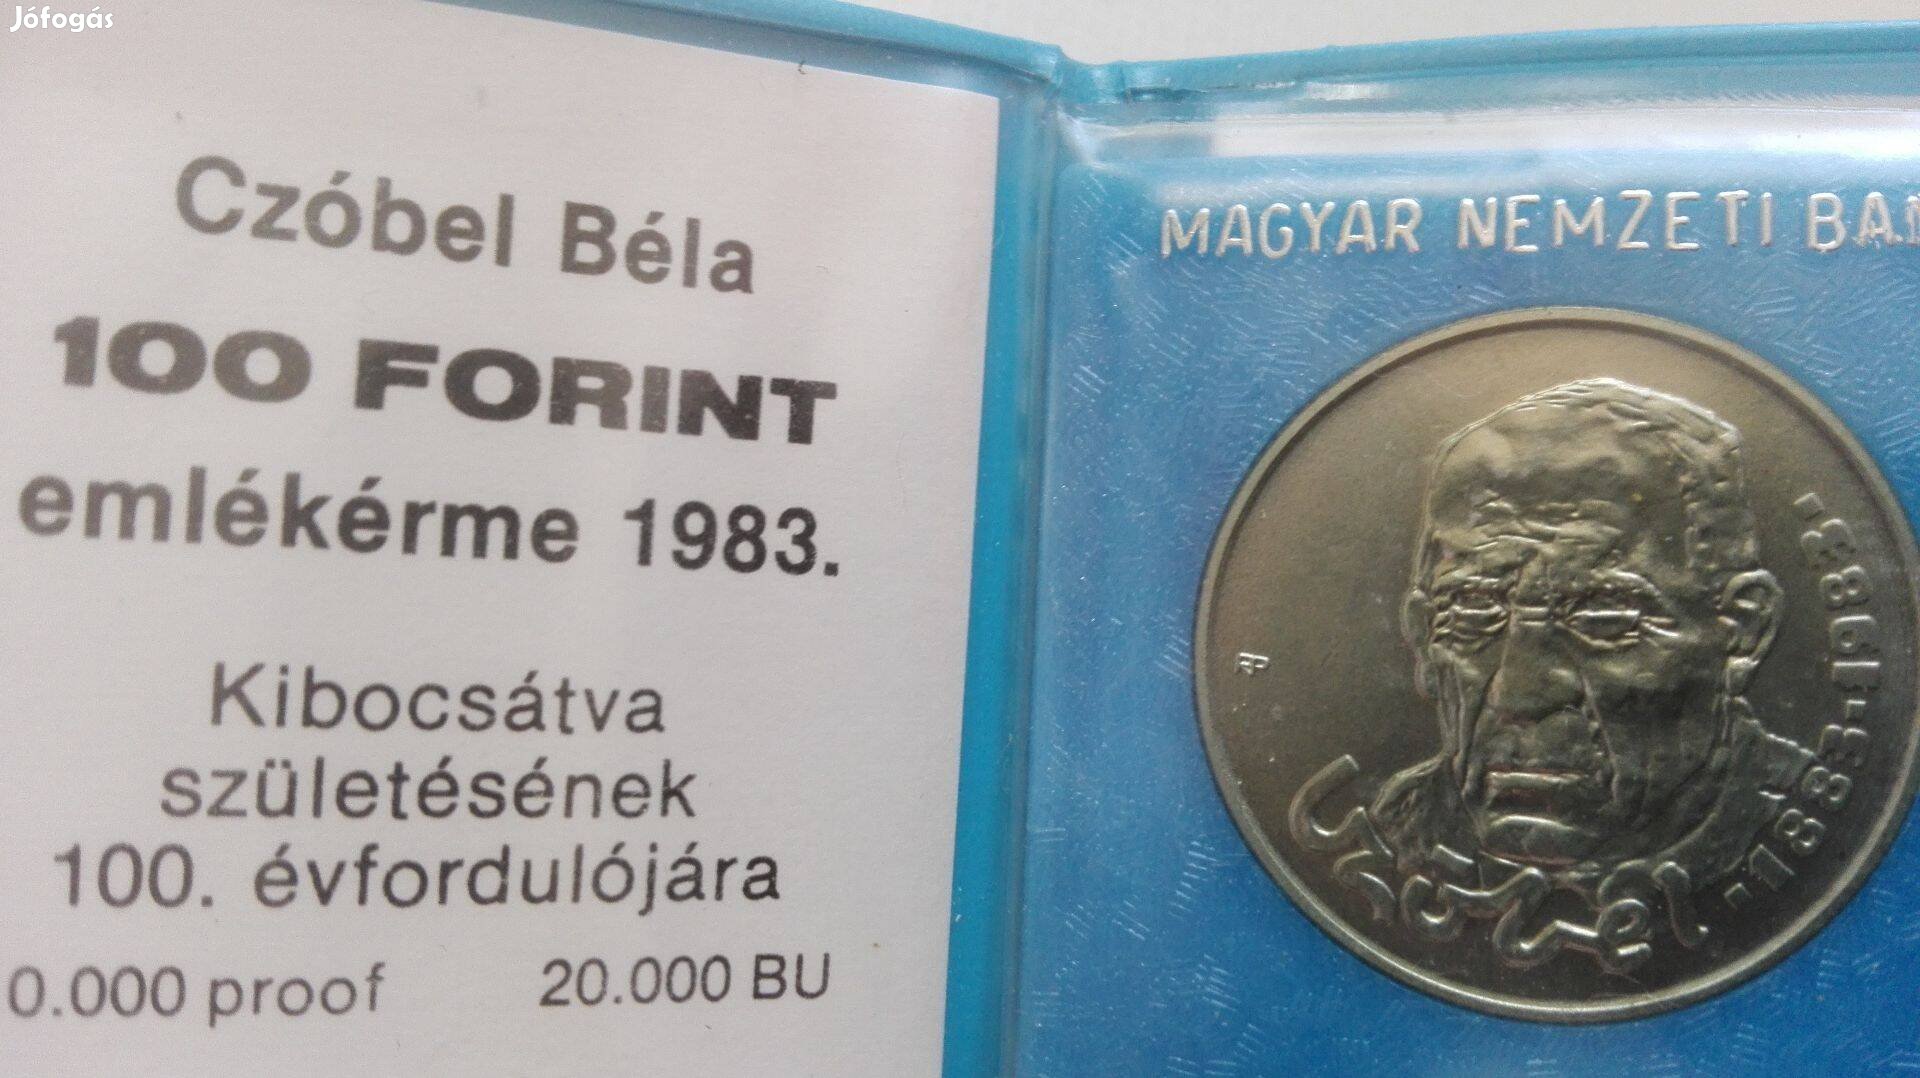 Czóbel Béla 100 Ft-os 1983-as